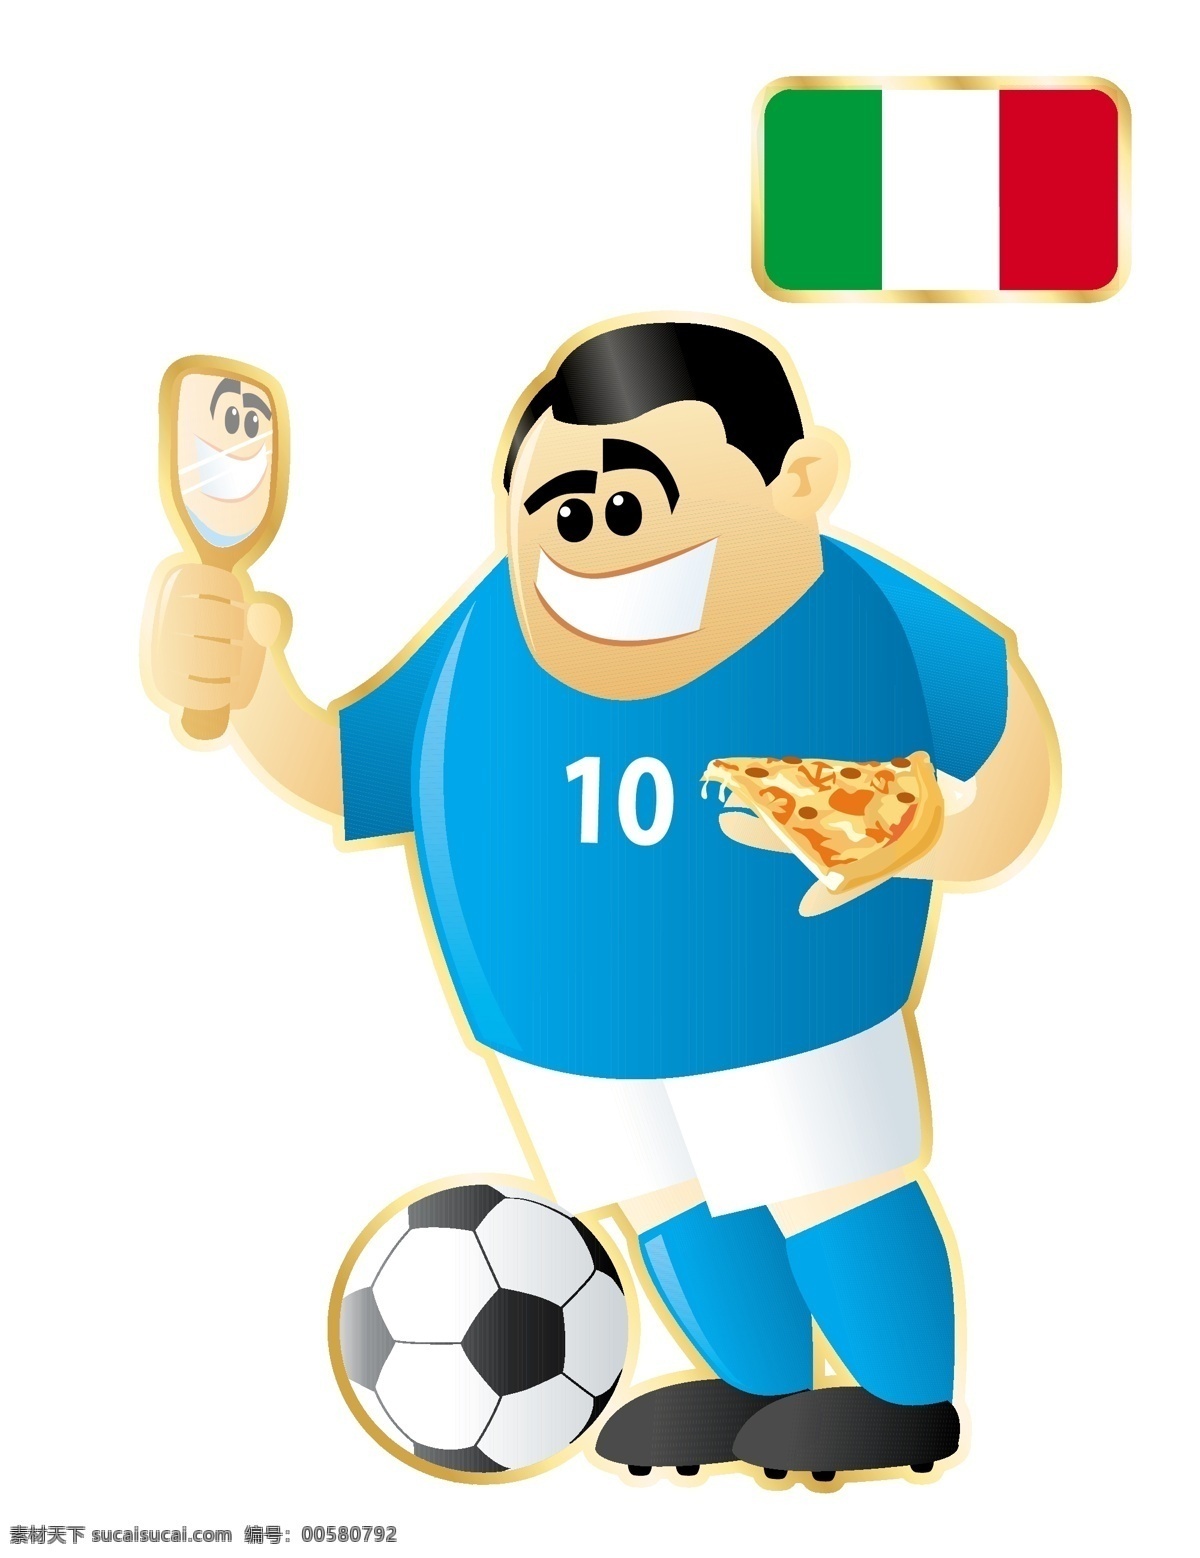 蓝色 足球 卡通 人物 形象 矢量图 衣服 特色 运动员 大胖子 运动 踢球 外国 矢量 扁平化 平面